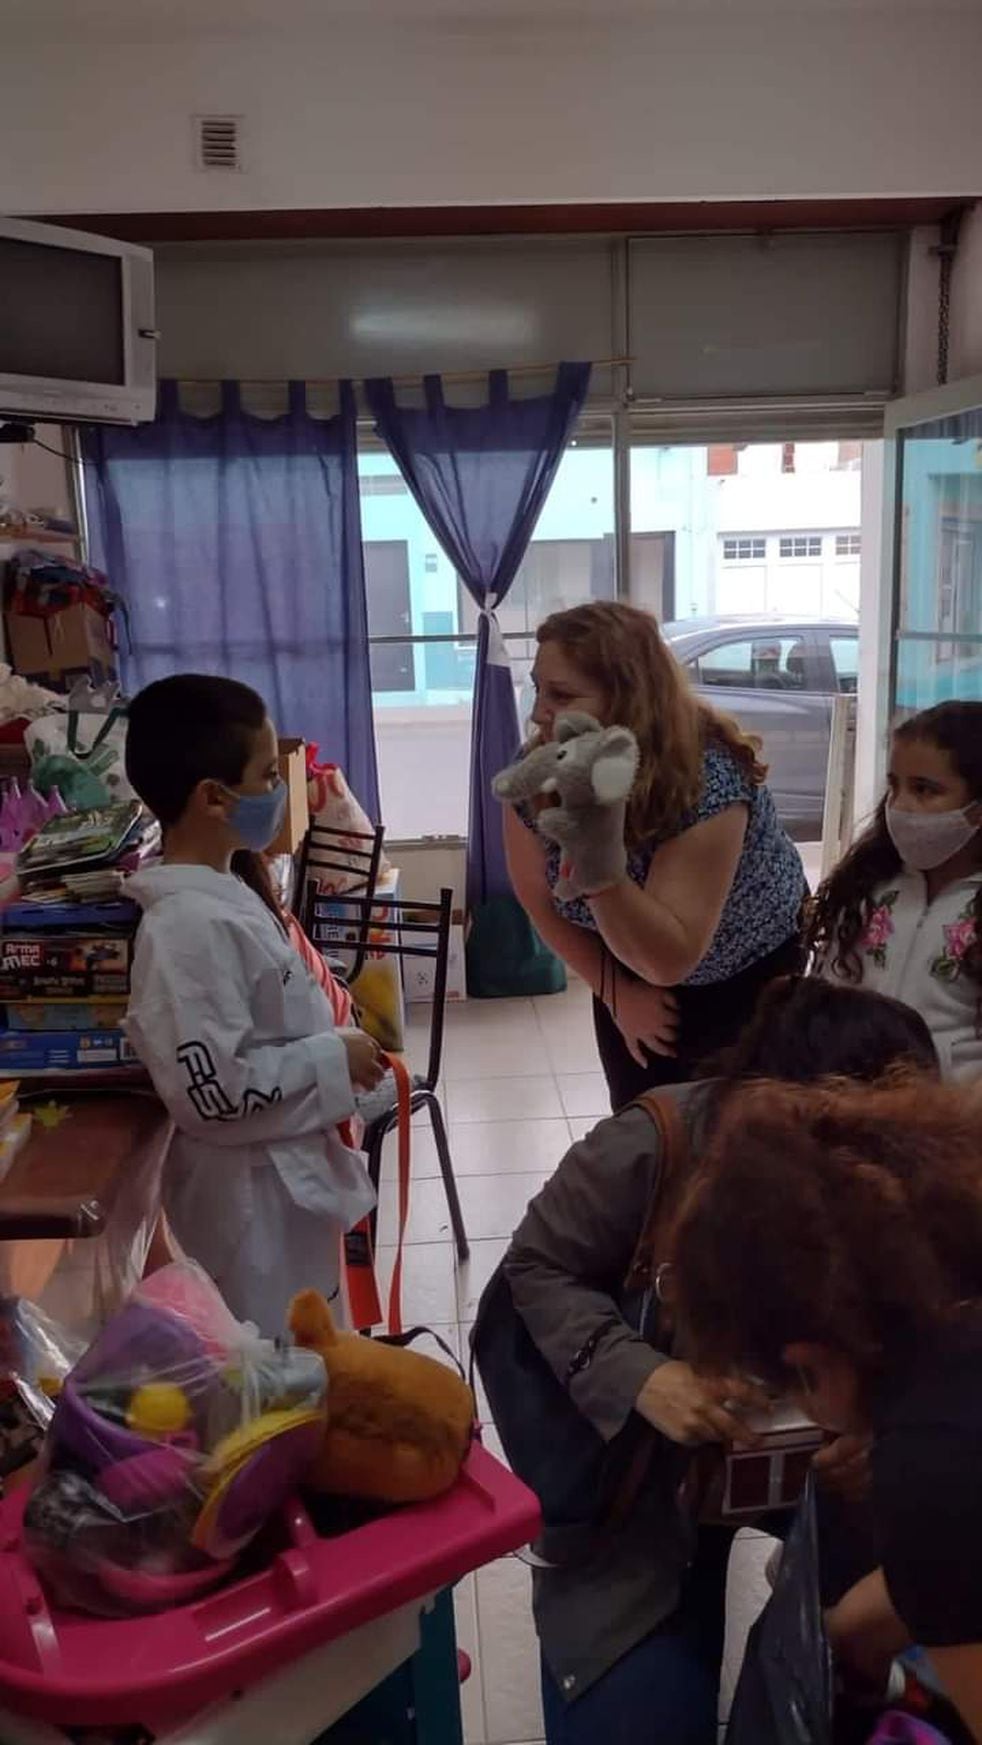 "El momento cuando reciben los juguetes, es el más satisfactorio", dijo Kevin, integrante del Hospital de Juguetes Viedma.